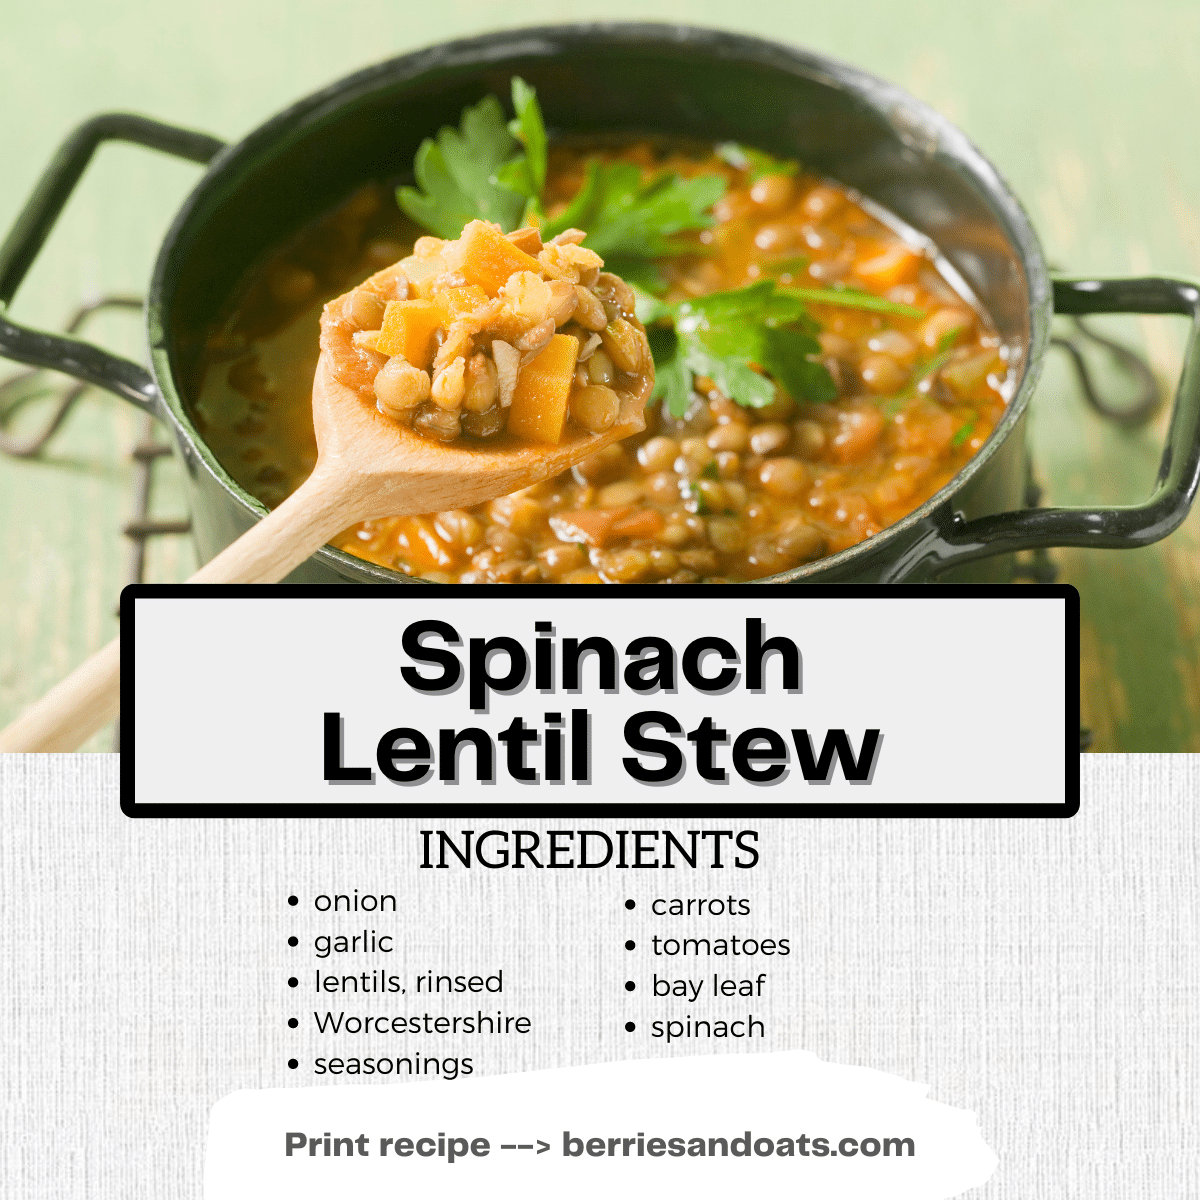 Spinach Lentil Stew